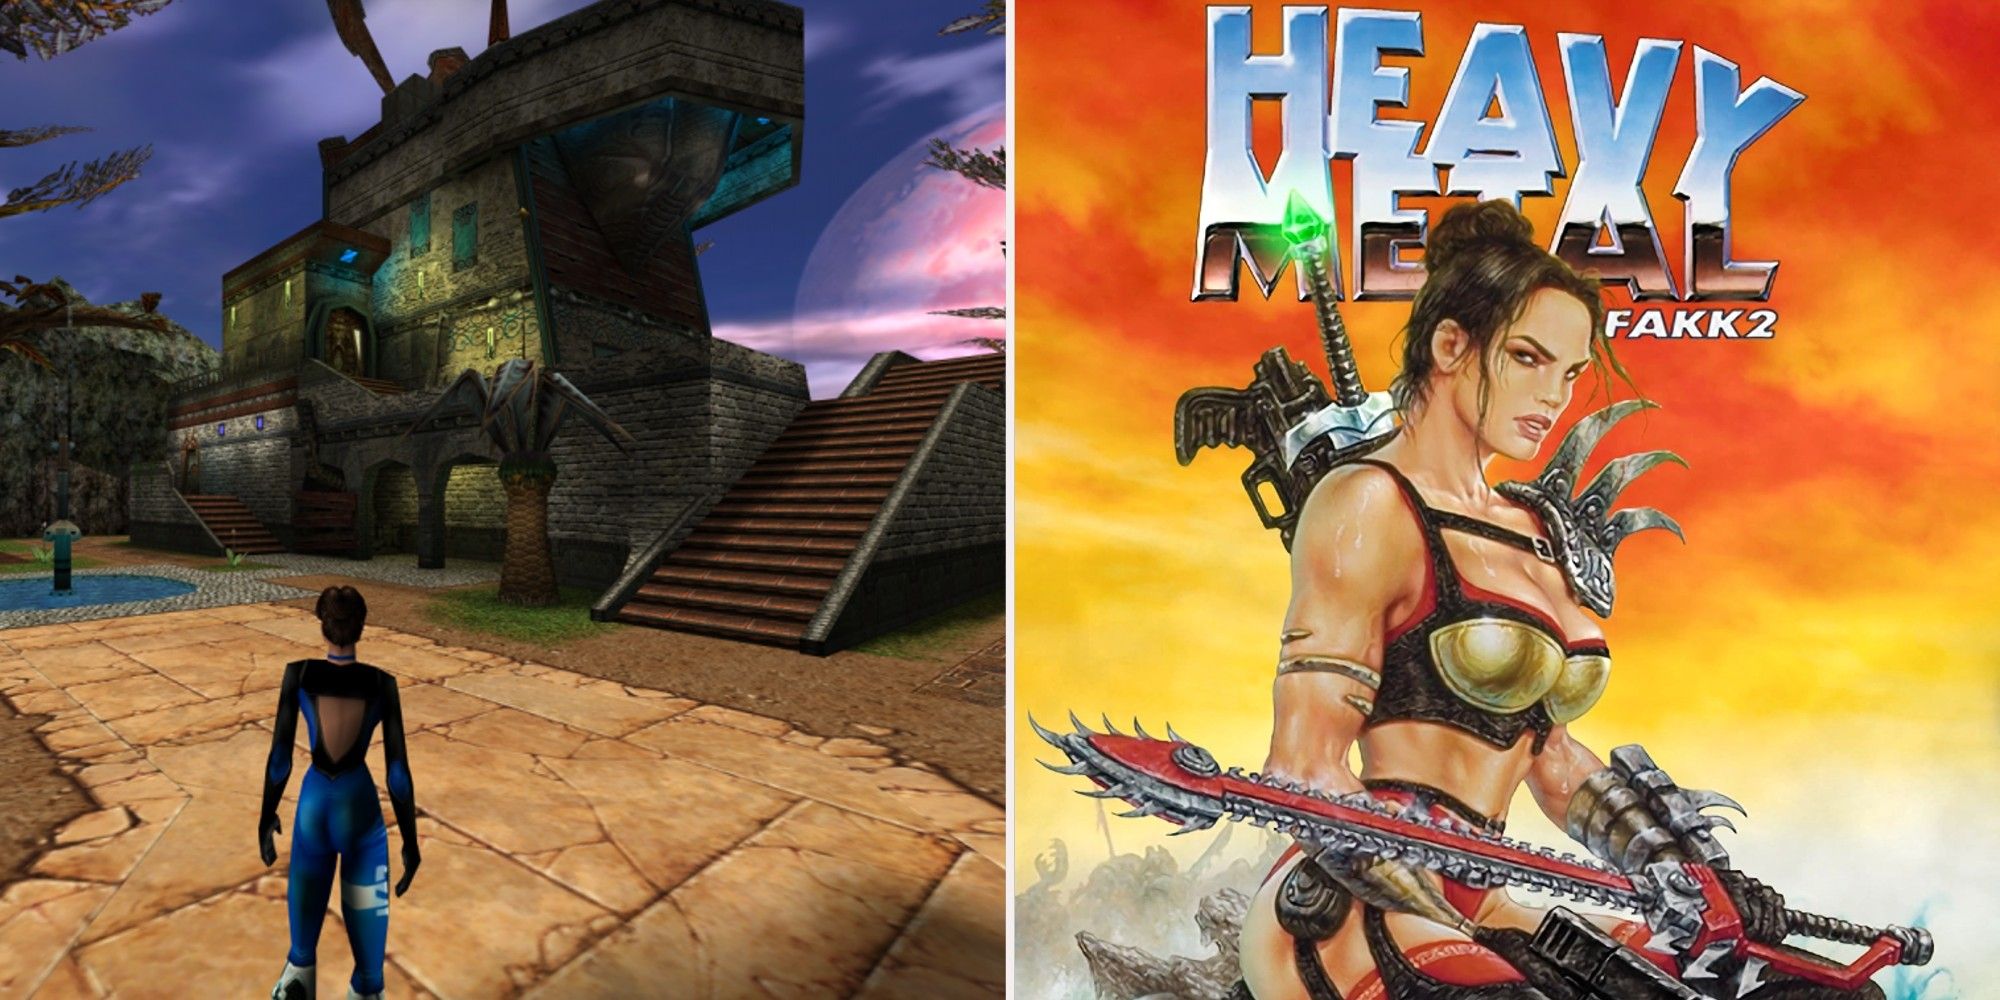 Heavy Metal FAKK 2 gameplay and box art